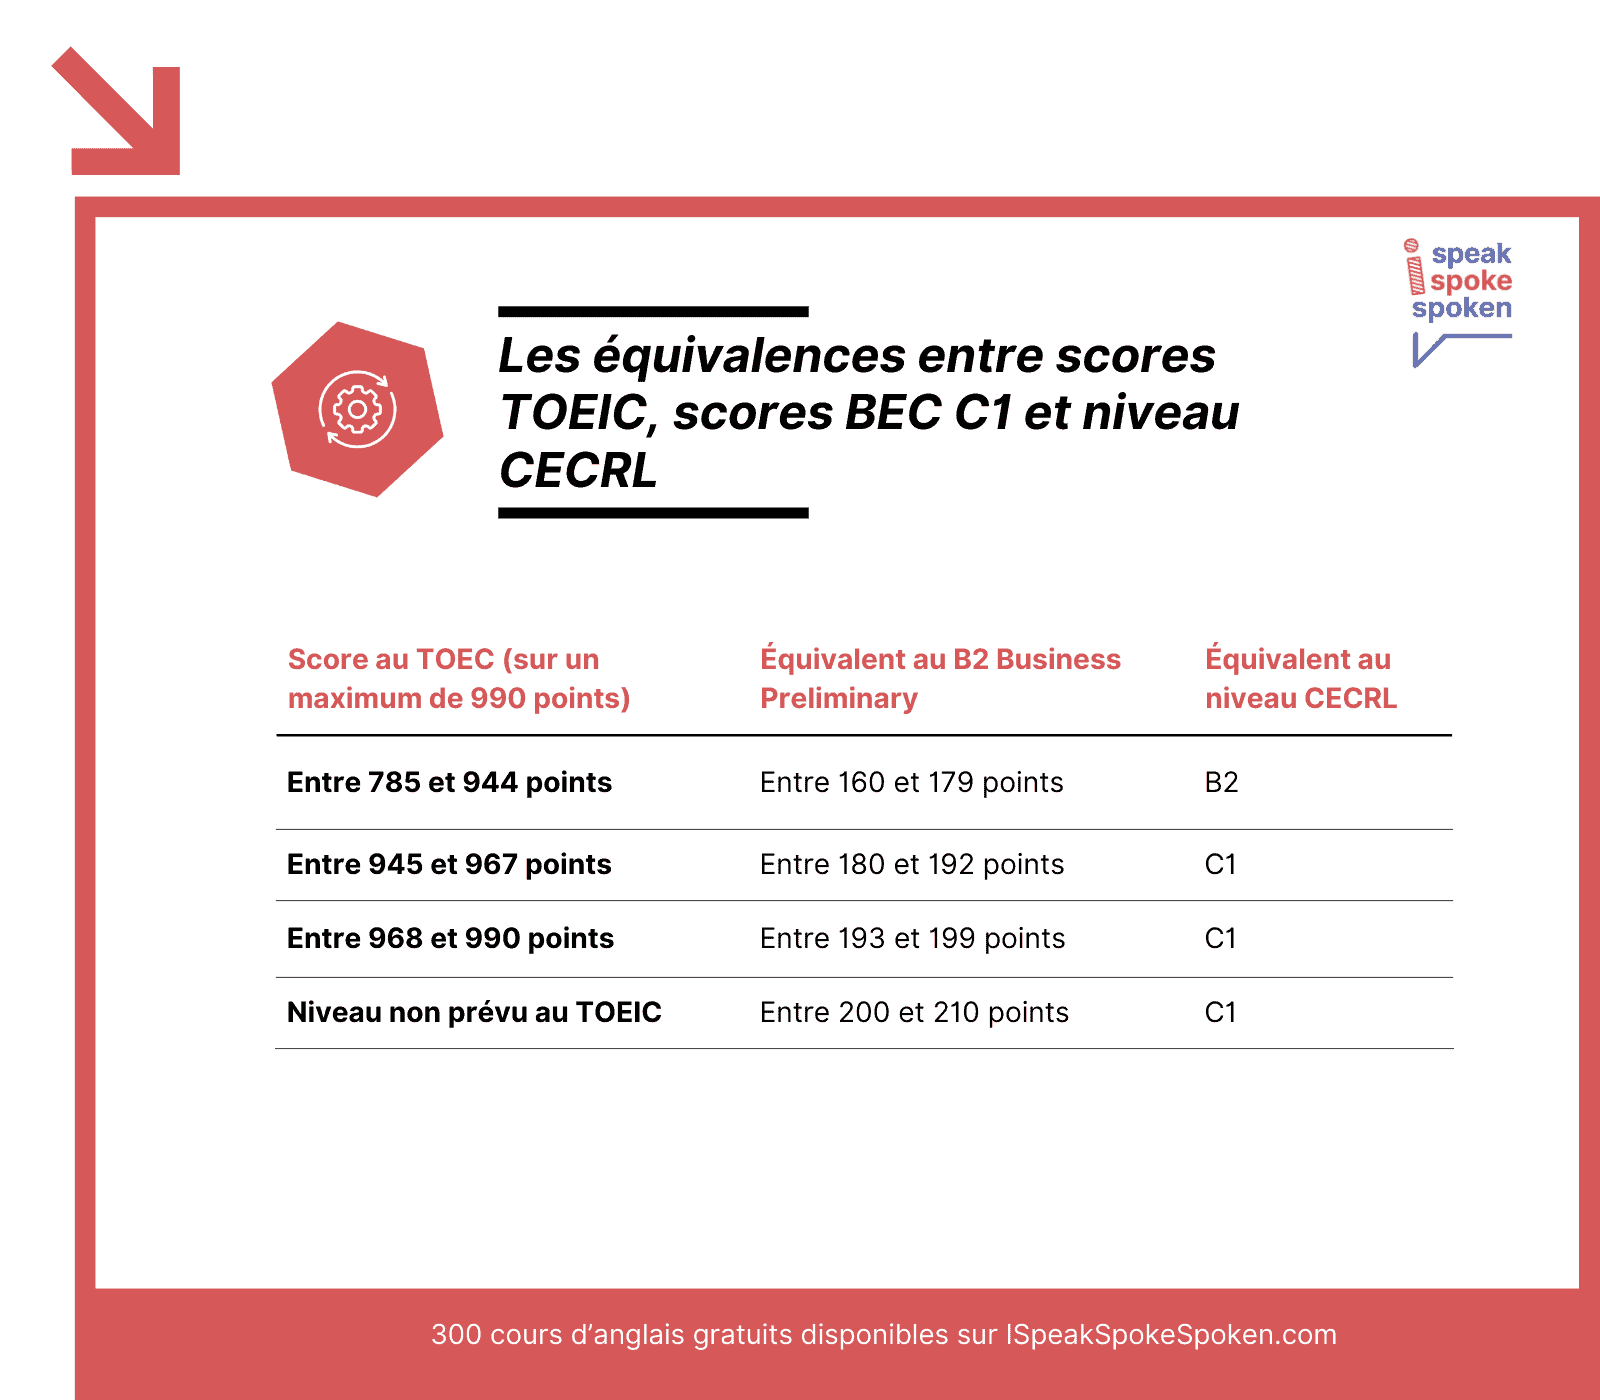 Les equivalences entre scores TOEIC scores BEC C1 et niveaux CECRL